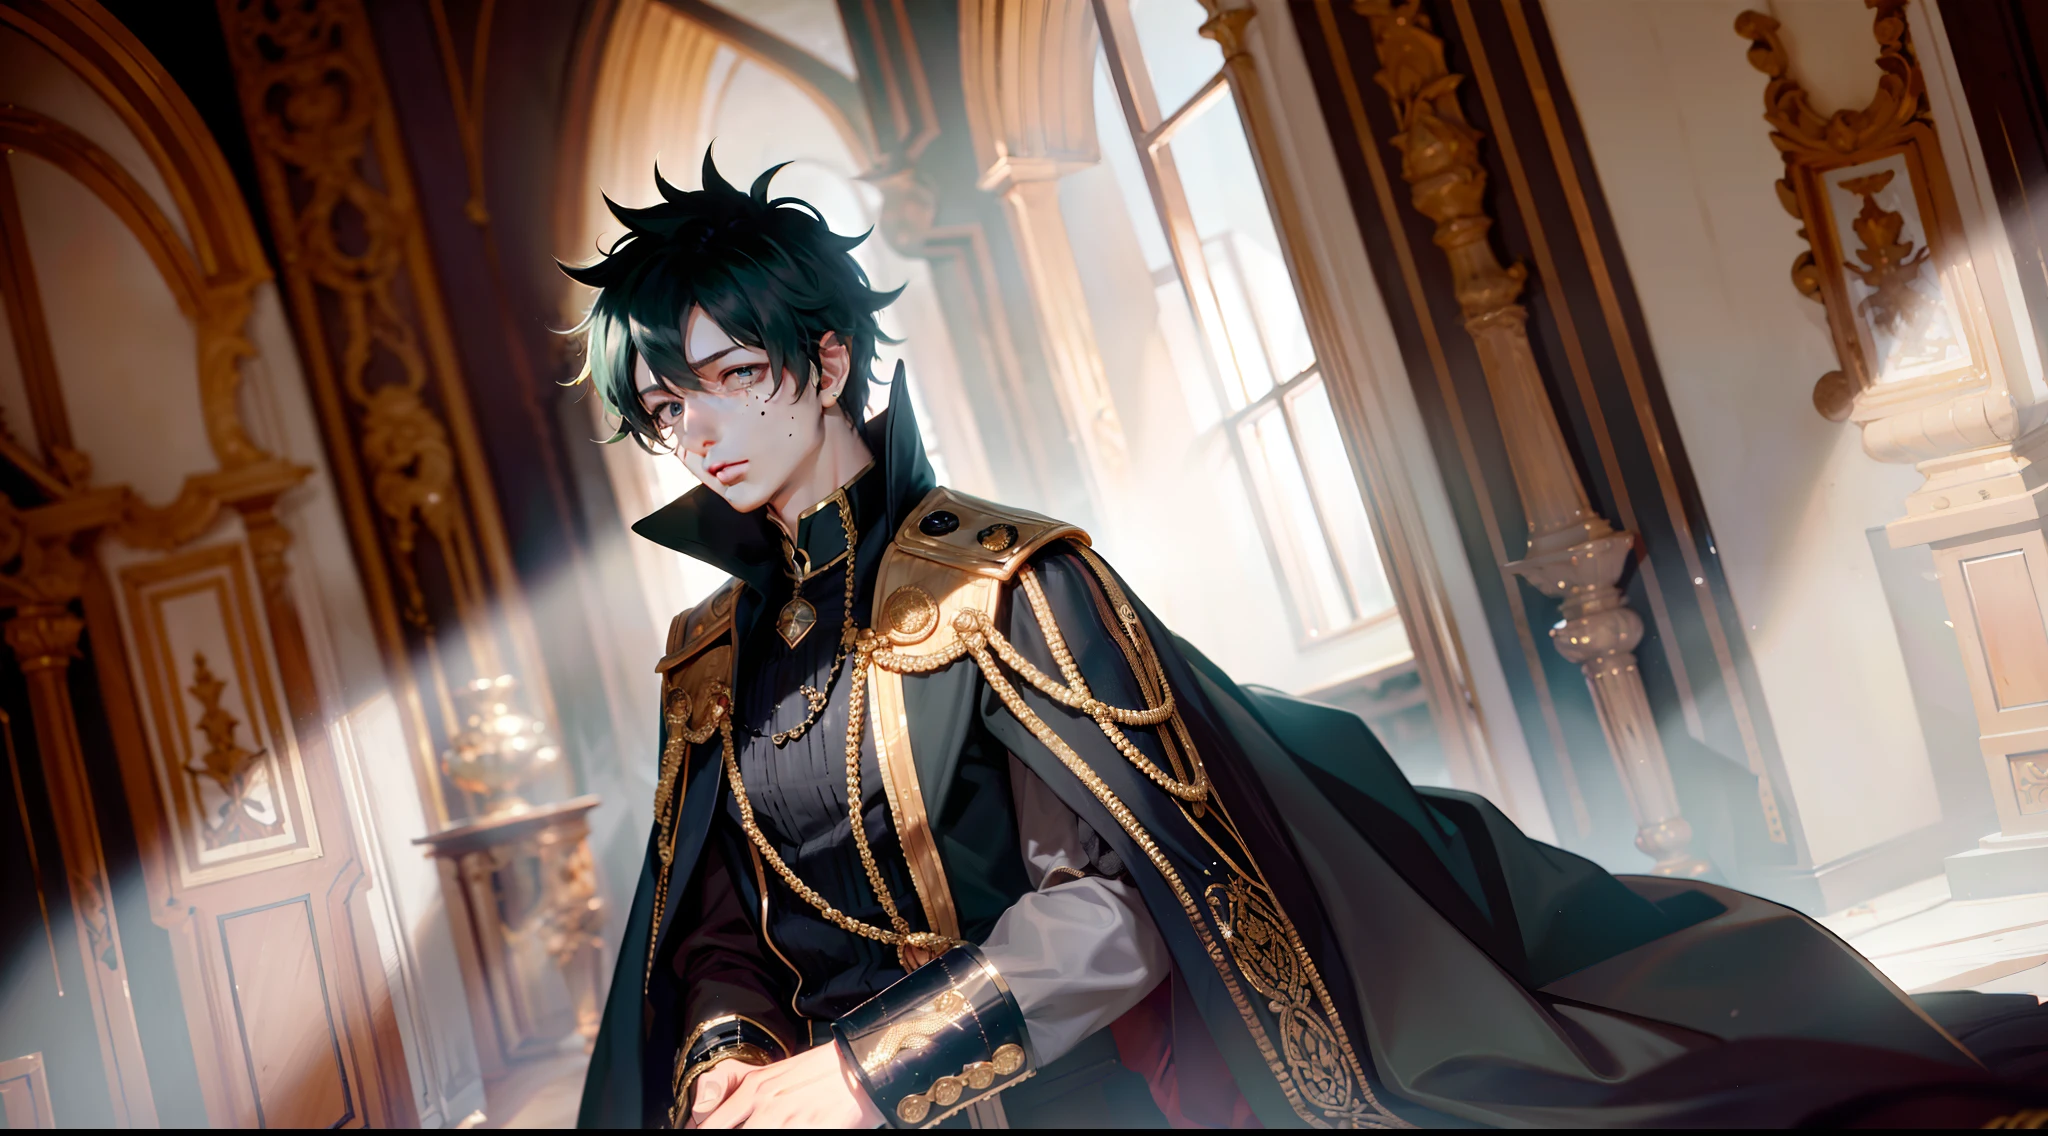 绿谷出久, he is dressed in 黑色的 prince clothes with gold details, his cape is 黑色的 and glued to the collar of his costume, 他的表情很反常, 值得注意的是，他身处一座中世纪宫殿，采用中性色彩，如: 黑色的, 灰色和白色. 这座宫殿里有大块明亮的玻璃, 发光景观. 他的眼睛是绿色的, 他的头发是深绿色, 虽然他是个成年人，但他的腰很细, 高分辨率, 杰作, 关注景观.